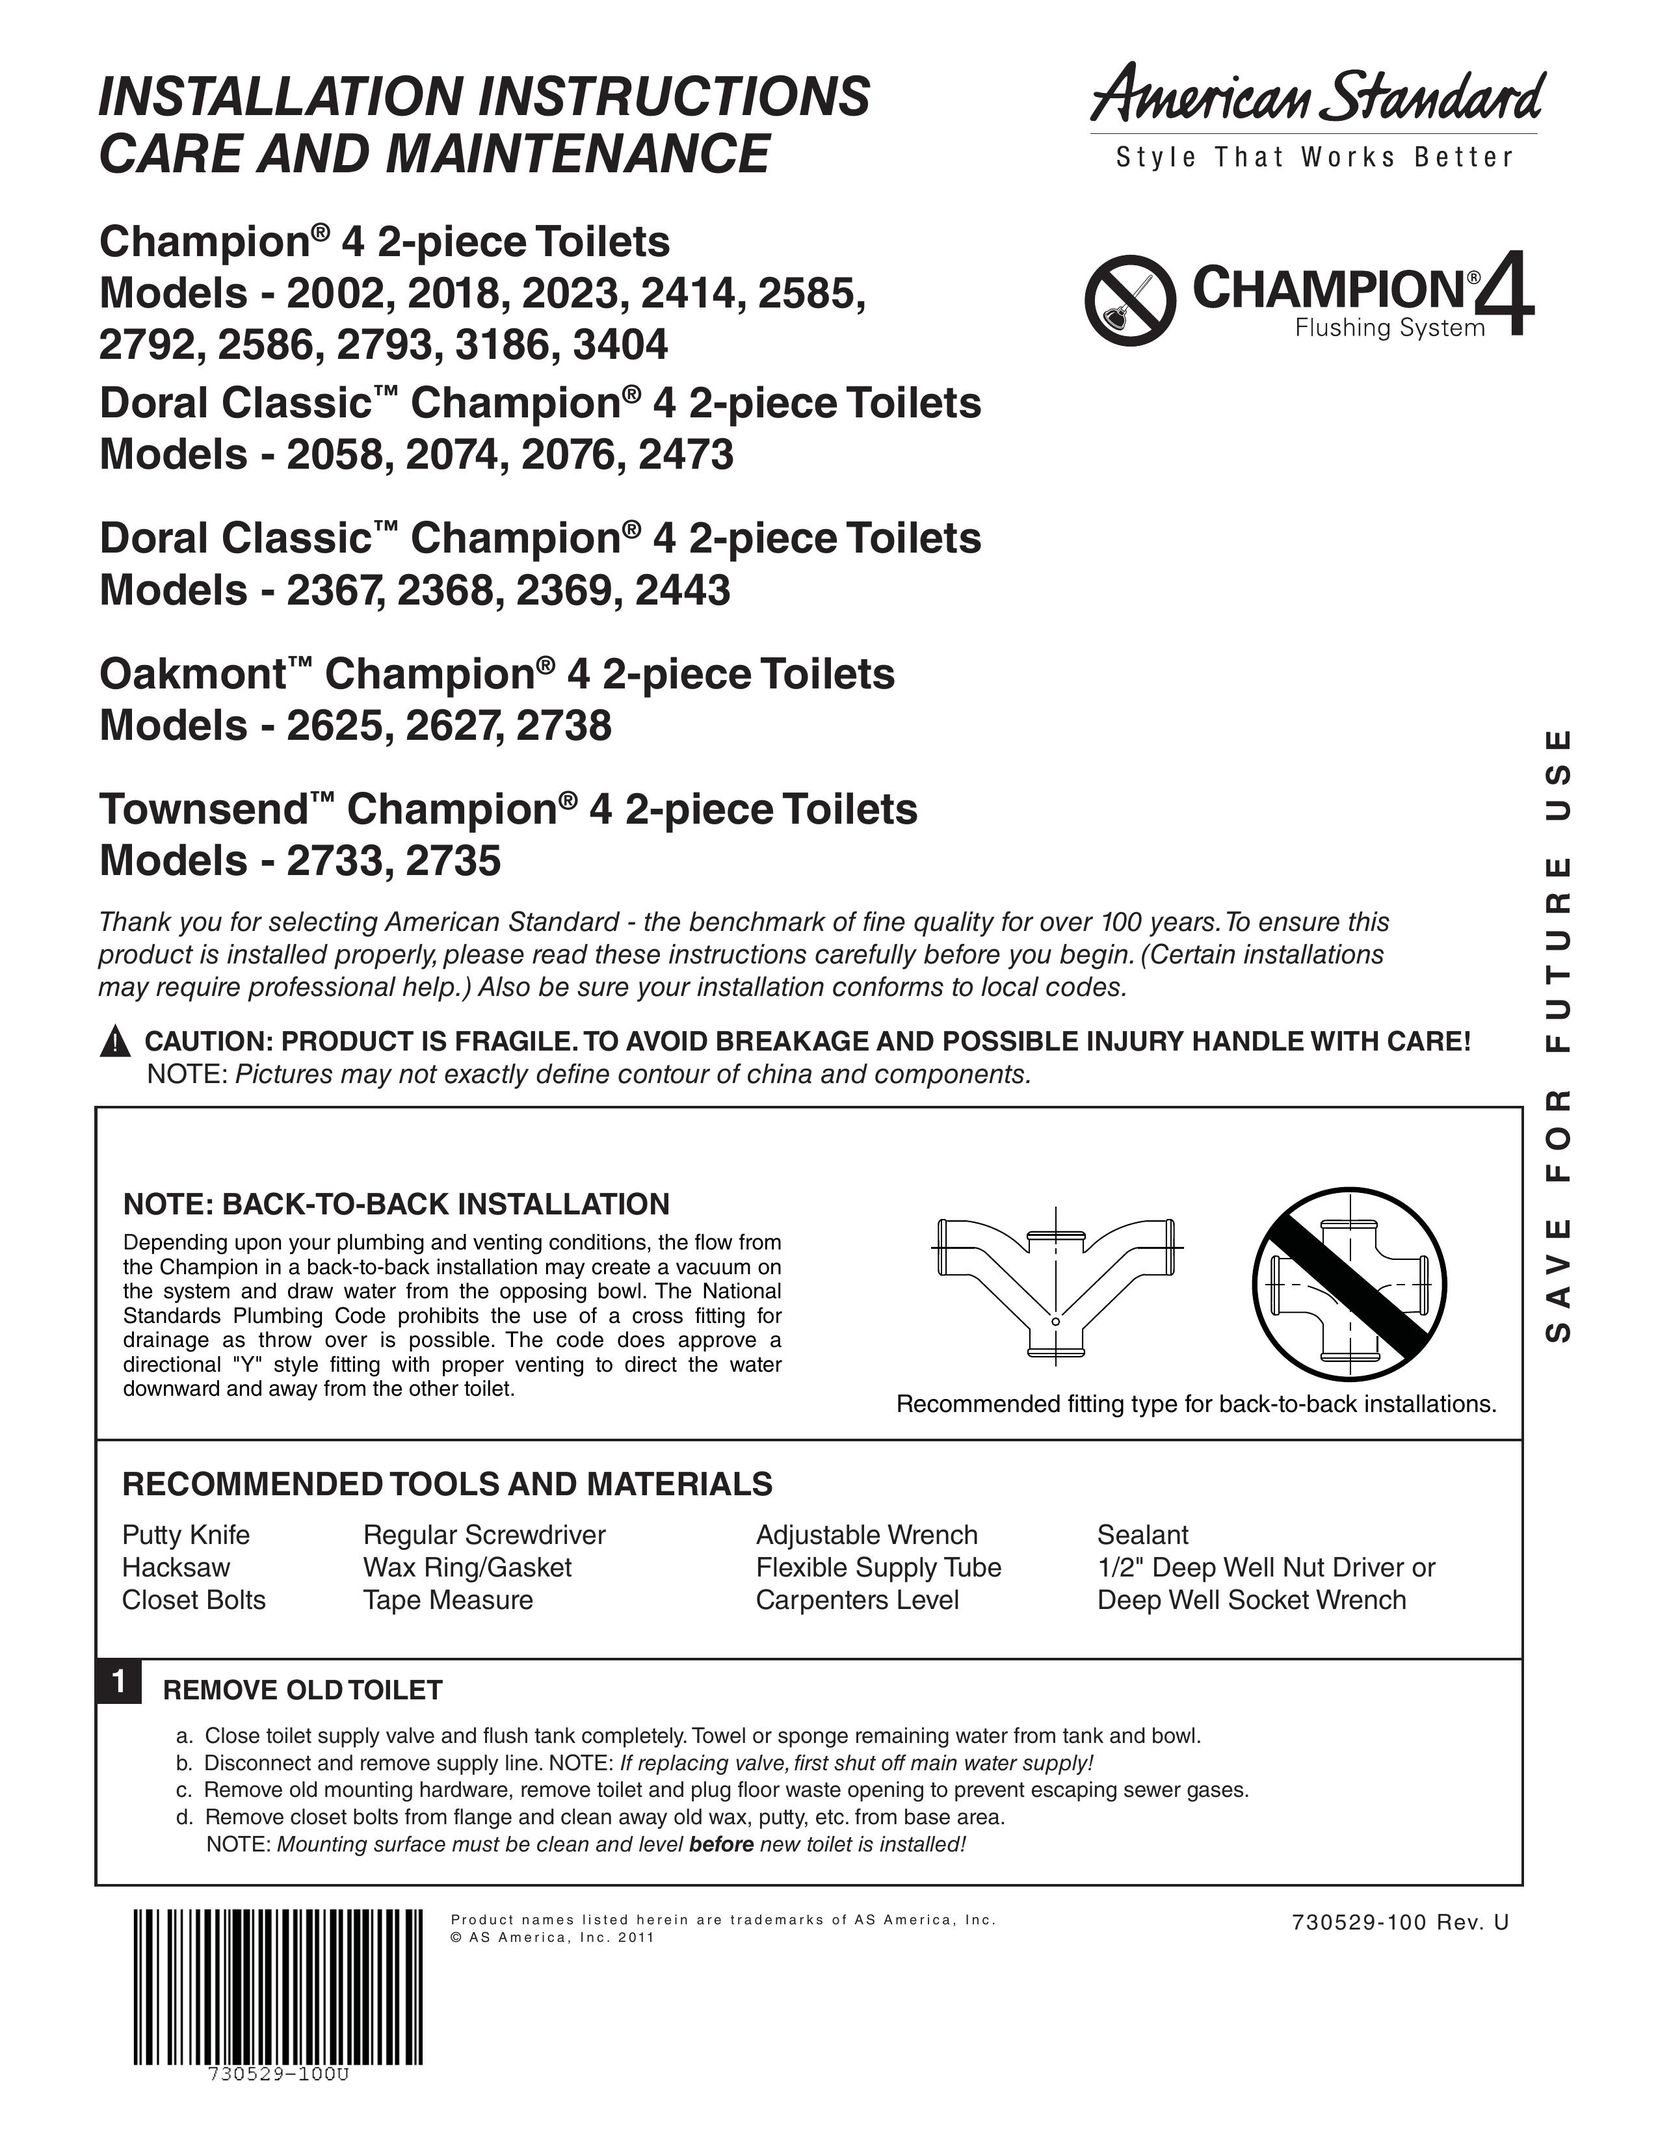 American Standard 2369 Plumbing Product User Manual